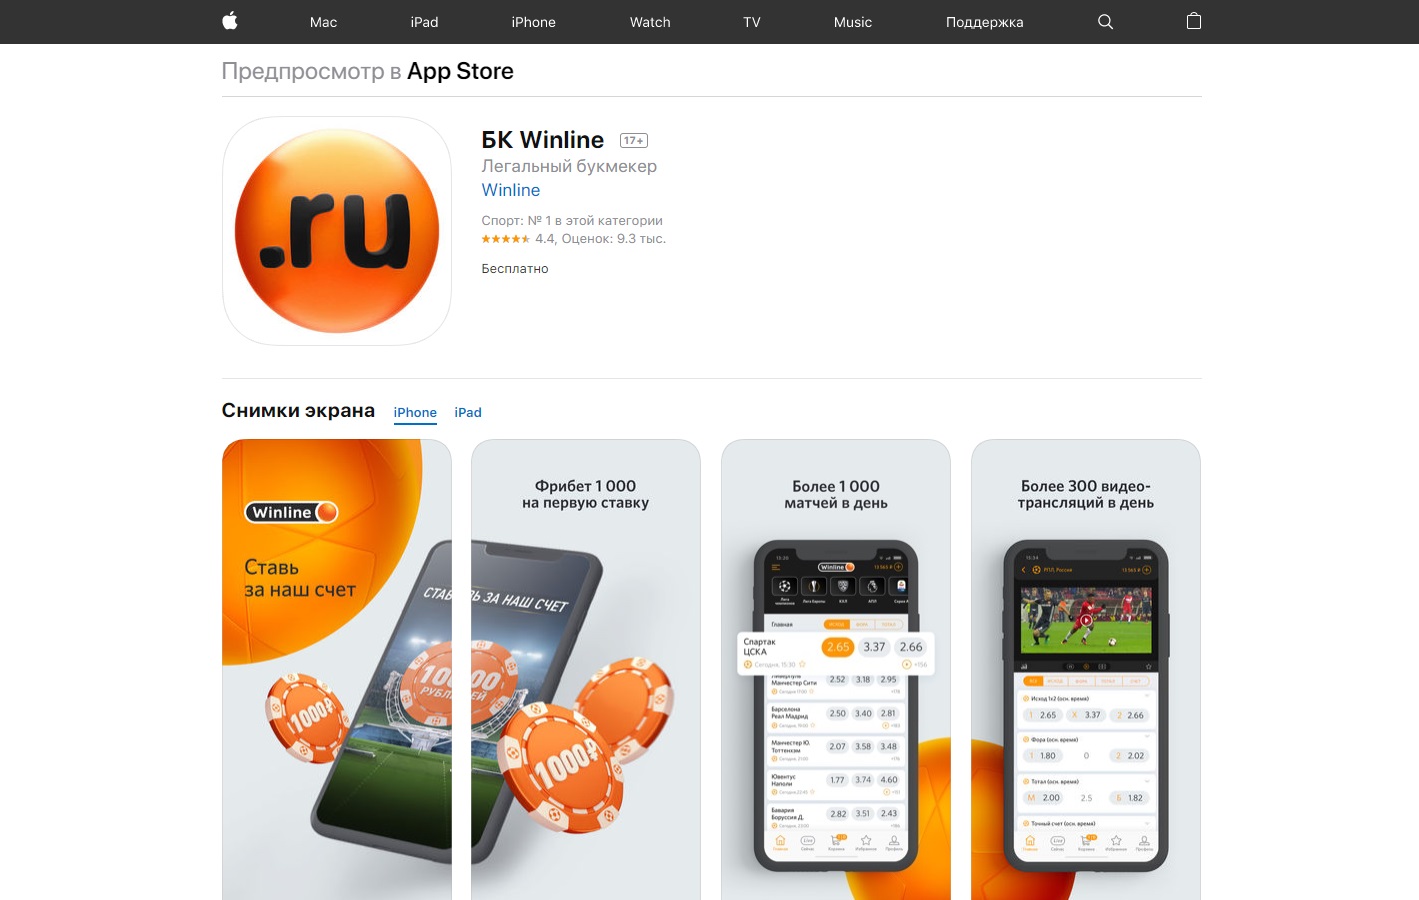 Приложение букмекера Винлайн для iPhone (iOS) в App Store